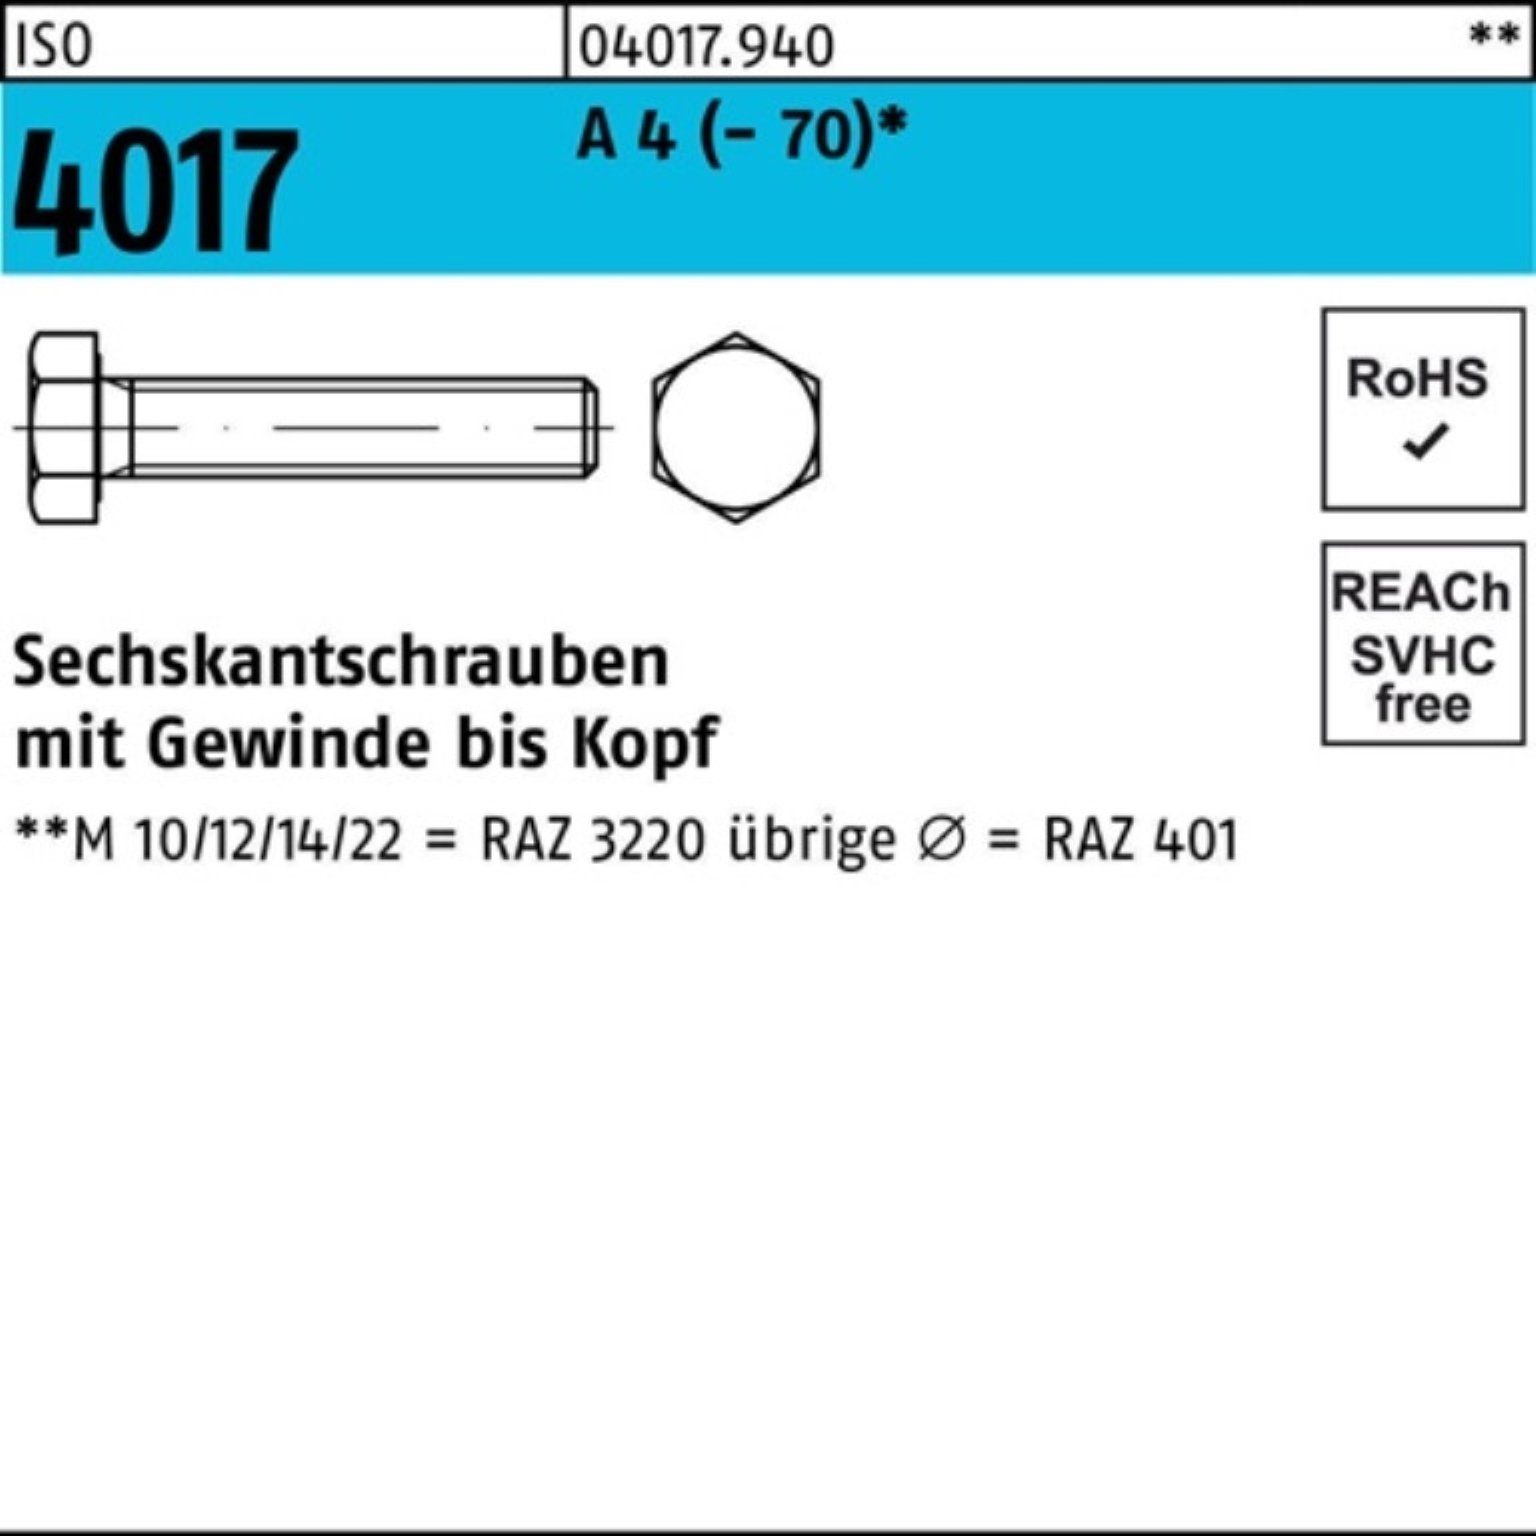 Bufab Sechskantschraube 100er Pack Sechskantschraube ISO 4017 VG M20x 170 A 4 (70) 1 Stück